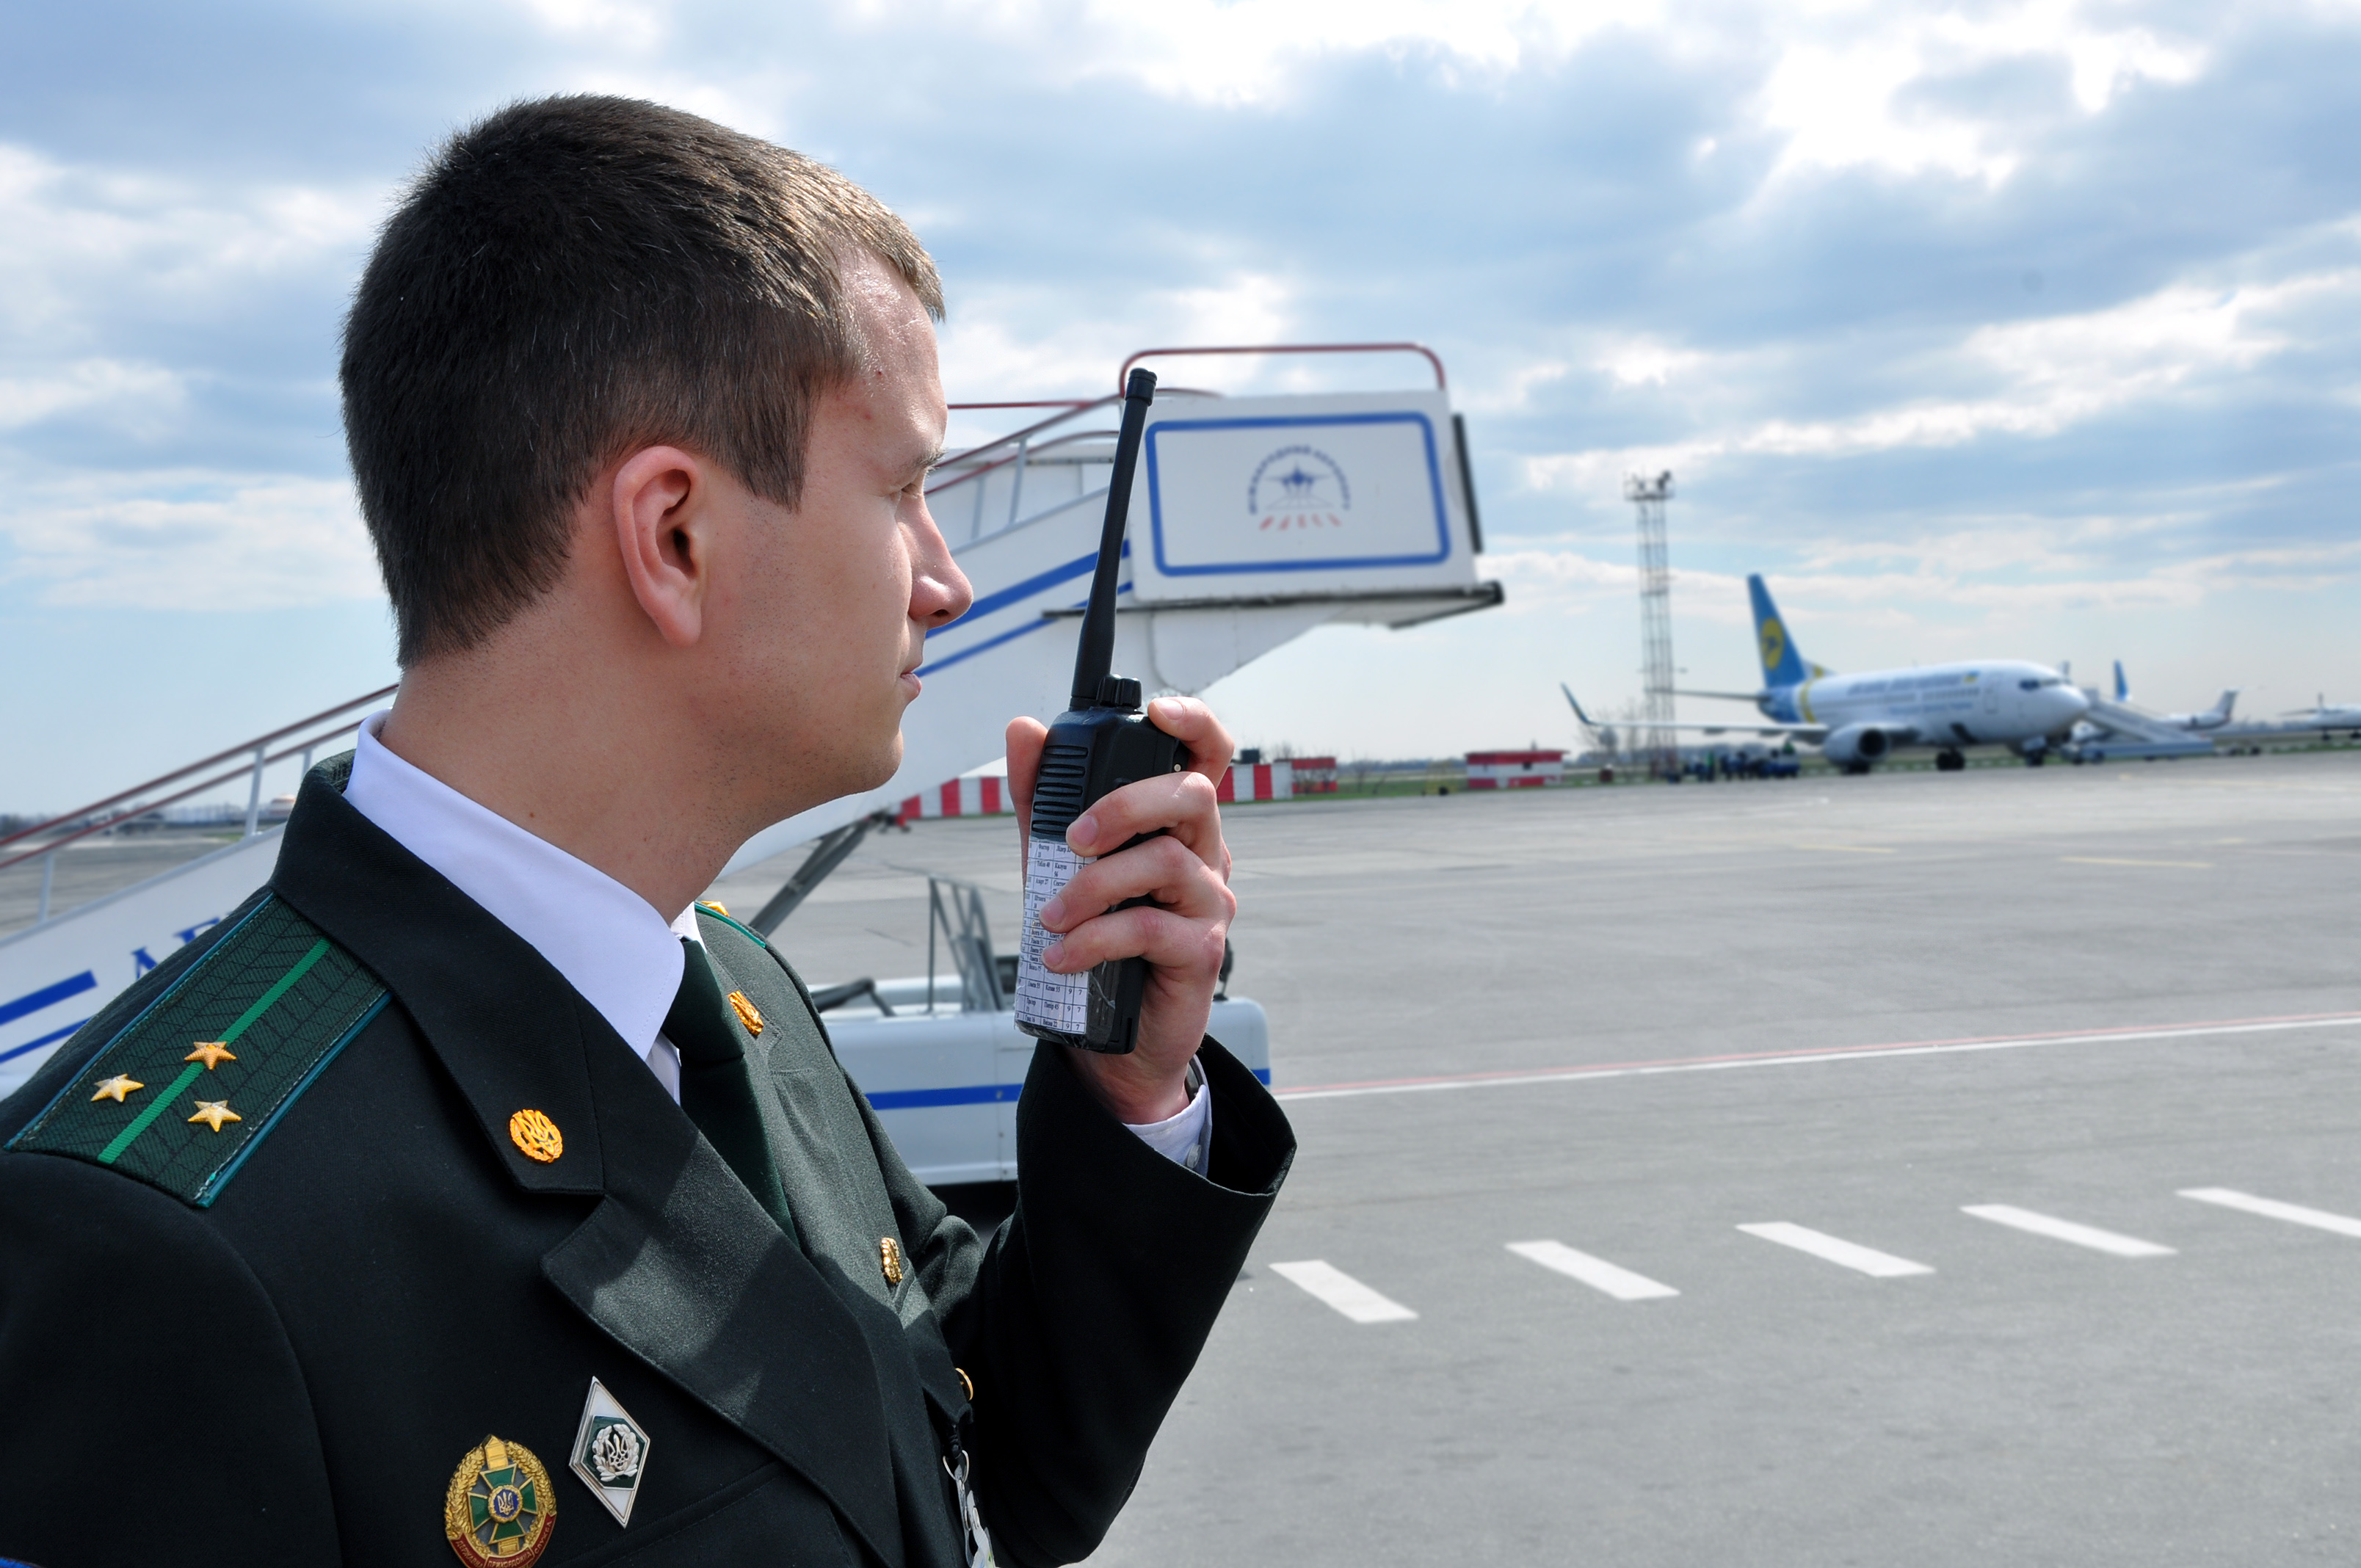 Аэропорт пограничная служба телефон. Отряд пограничного контроля в международном аэропорту Шереметьево.